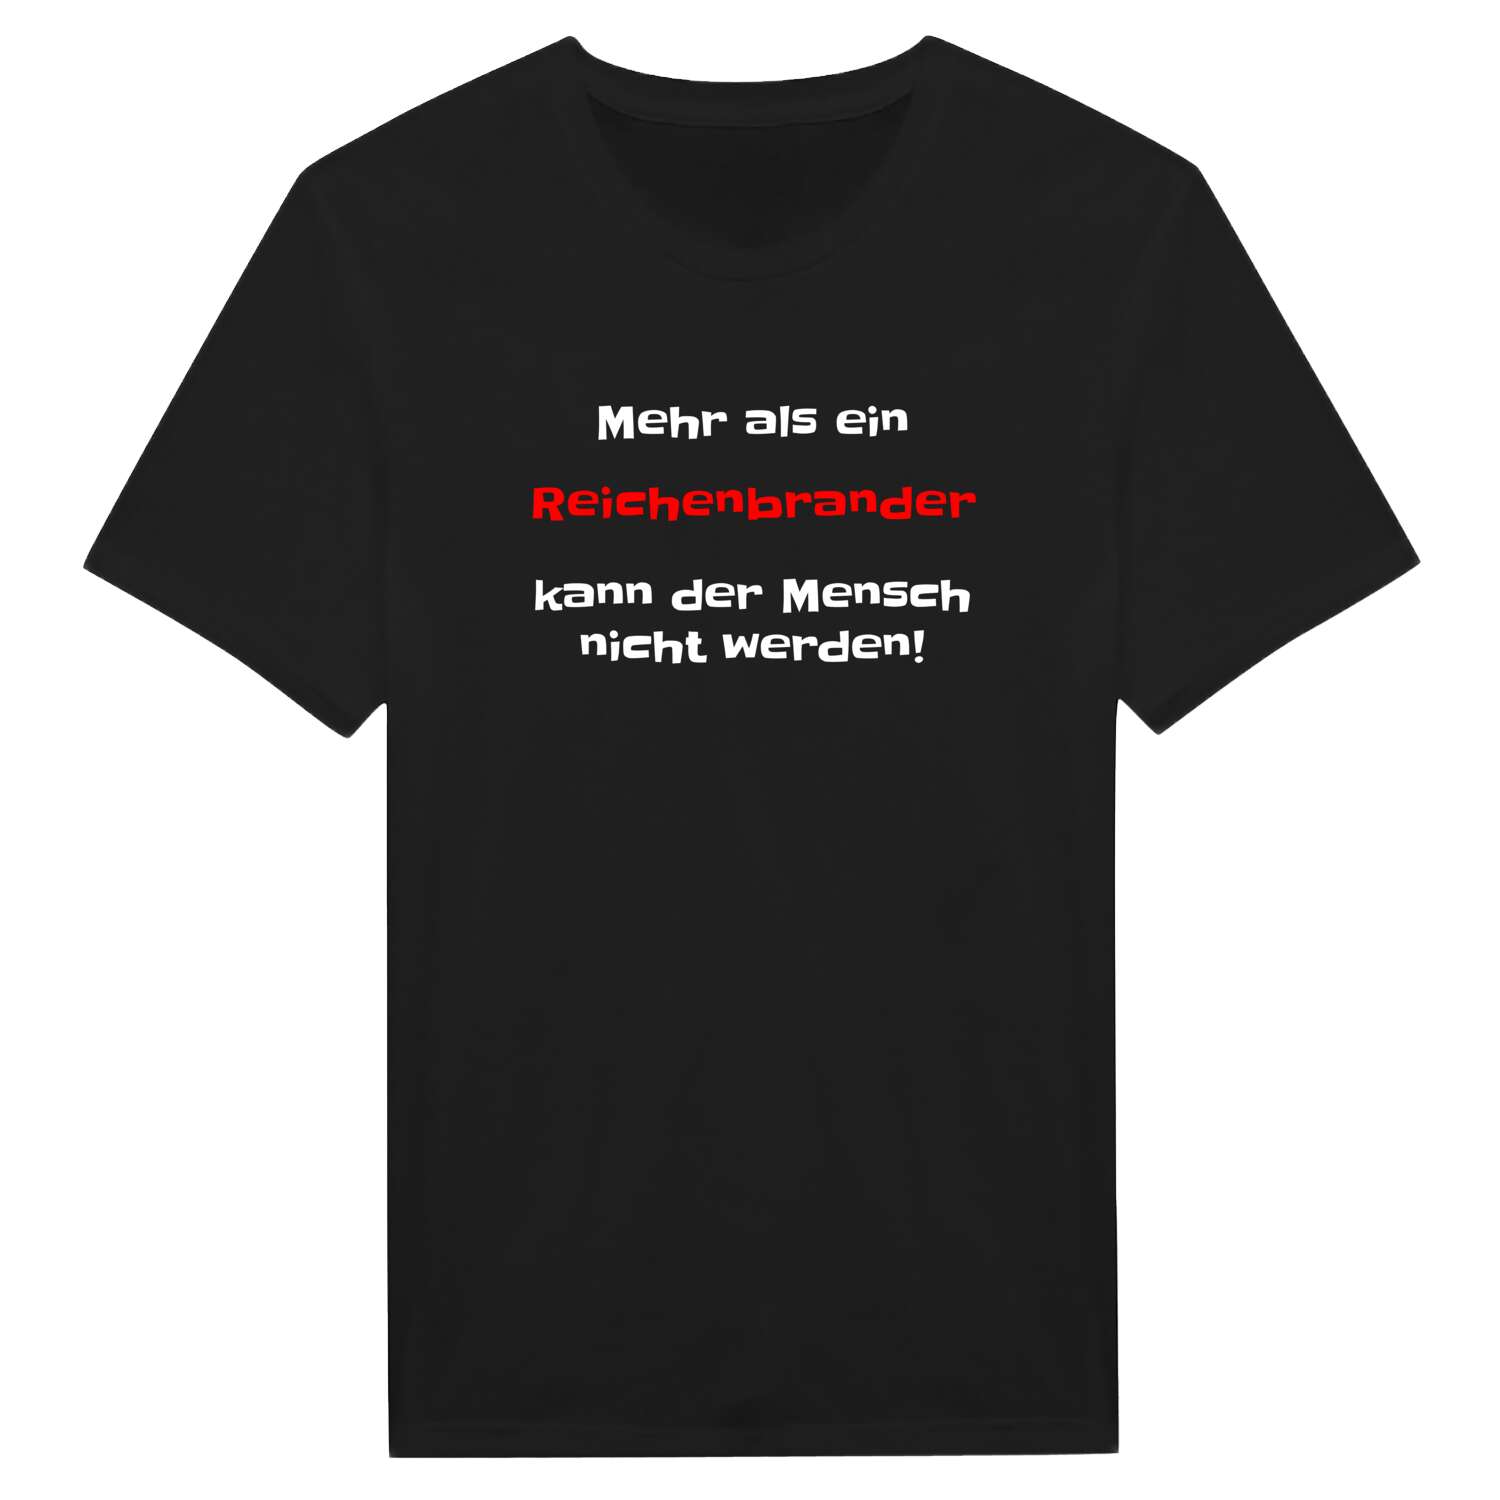 Reichenbrand T-Shirt »Mehr als ein«